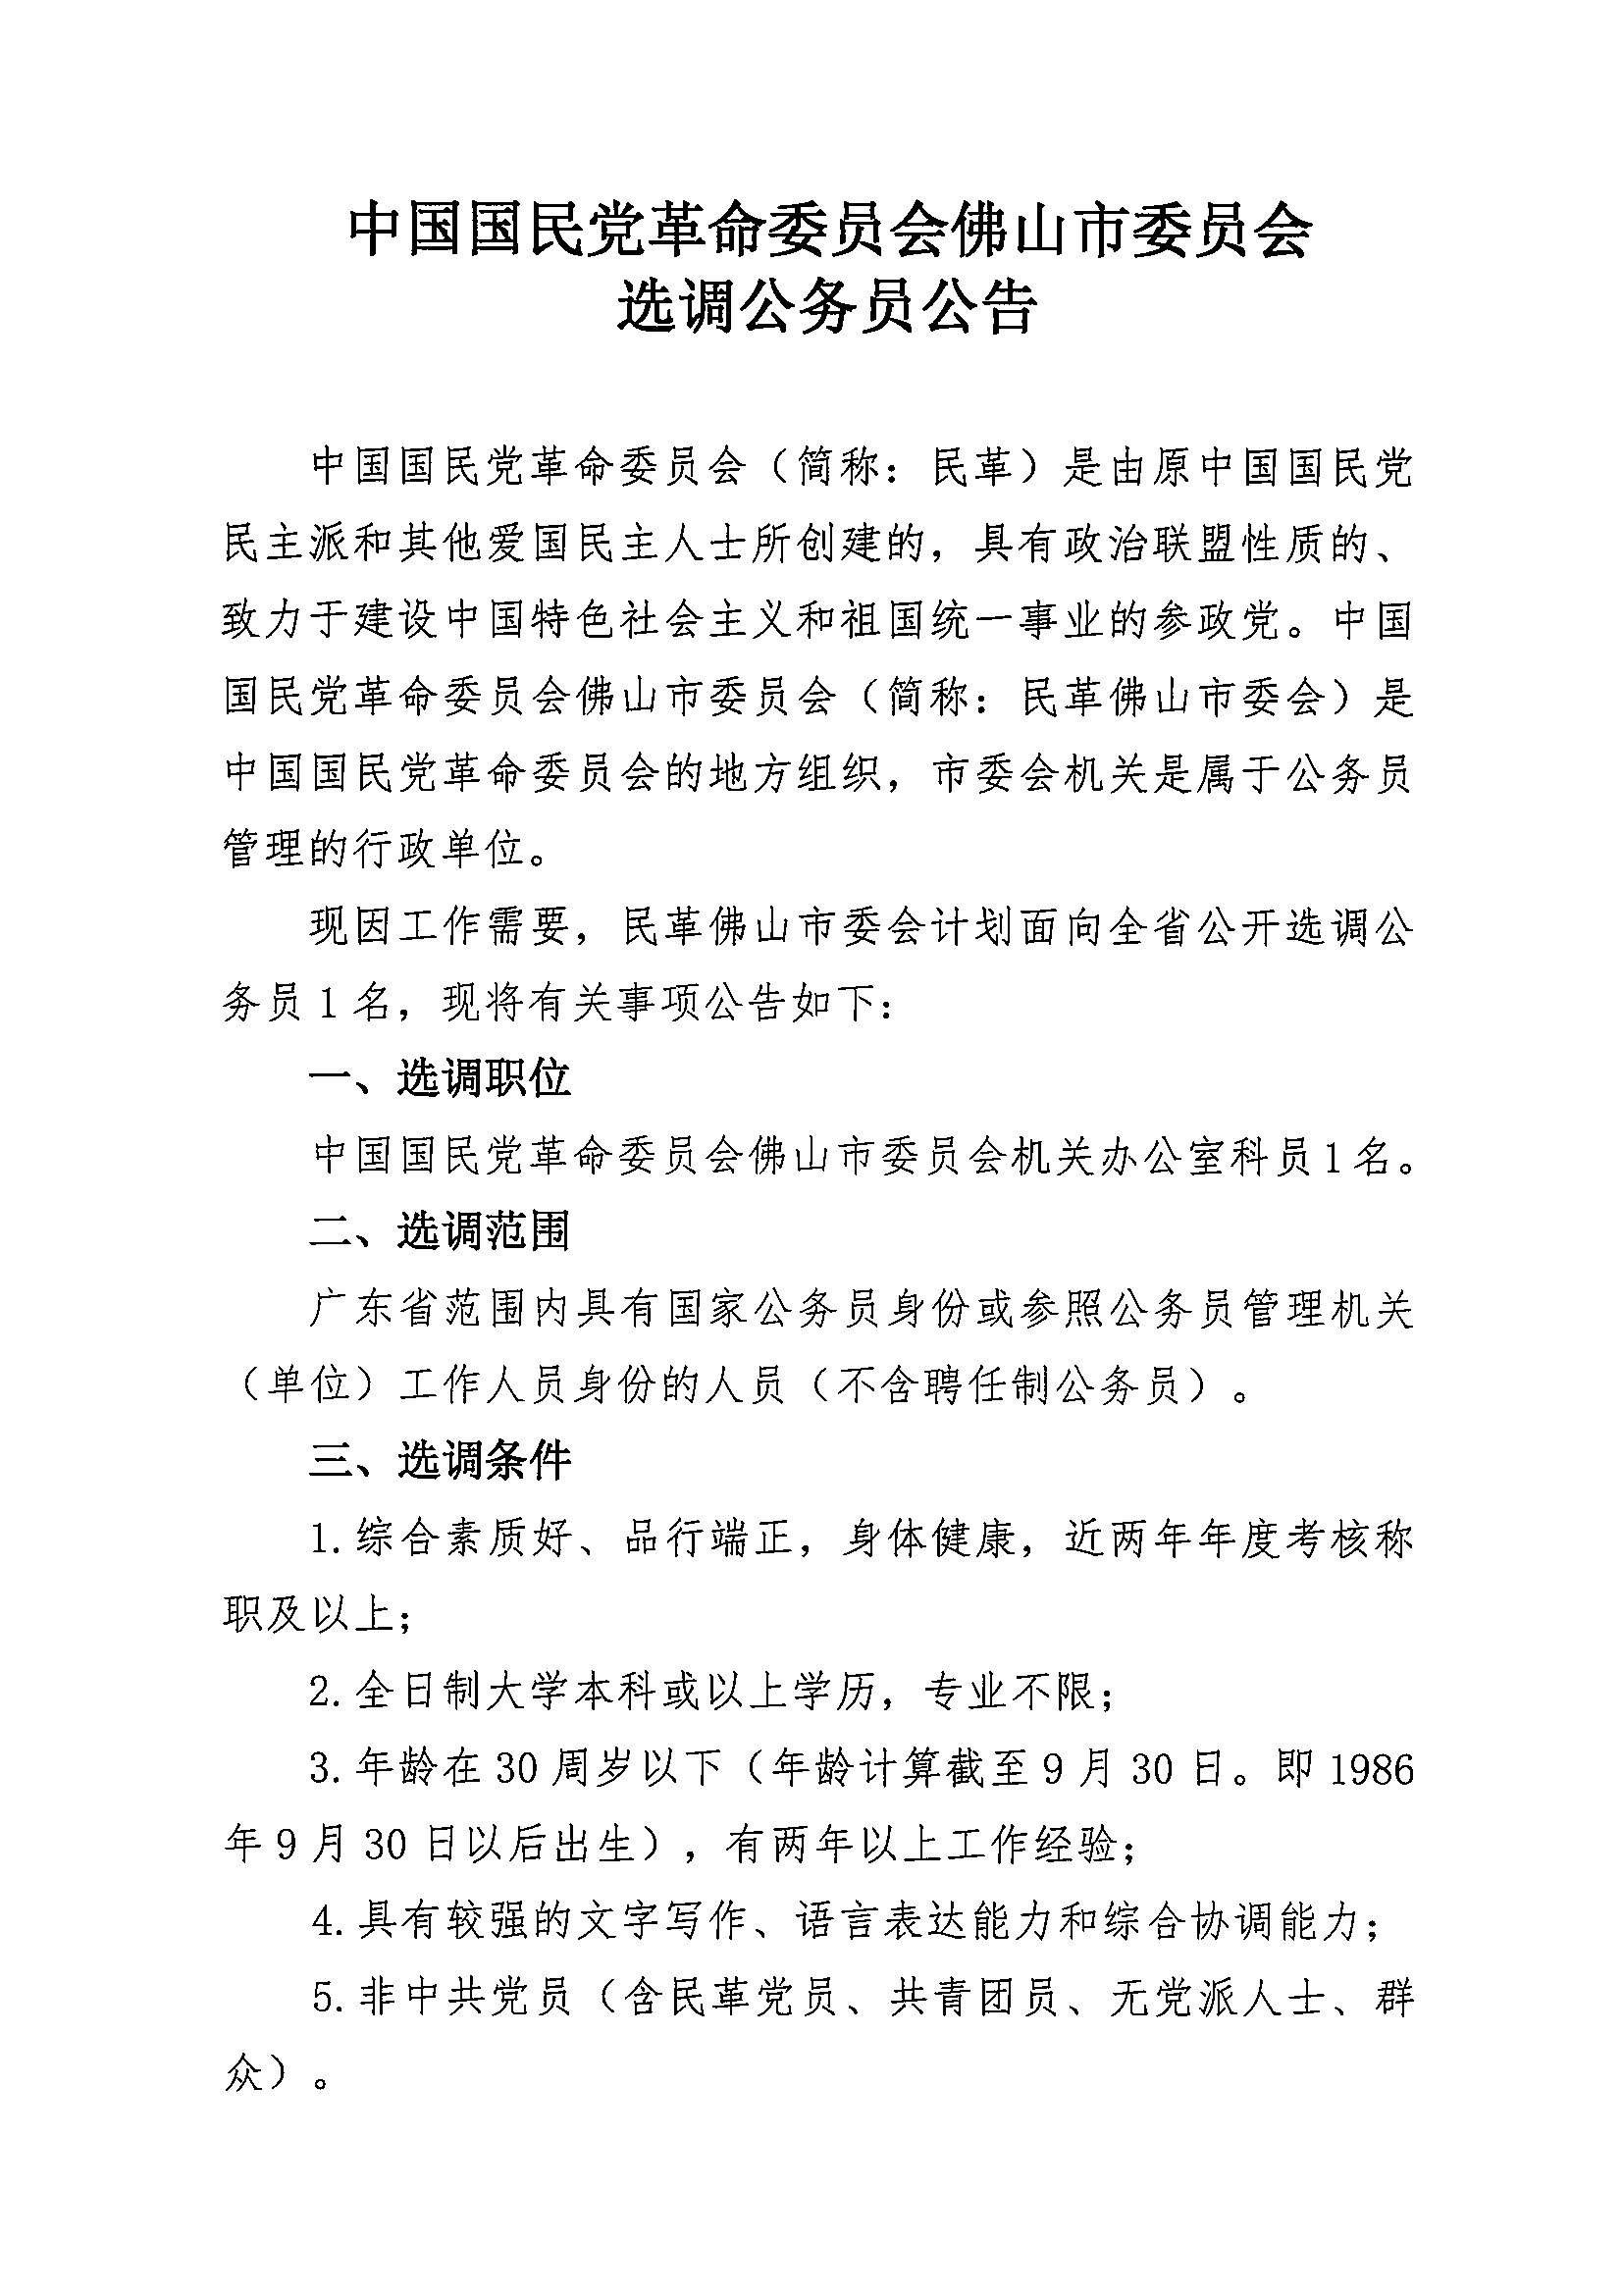 中国国民党革命委员会佛山市委员会选调公务员公告1.jpg